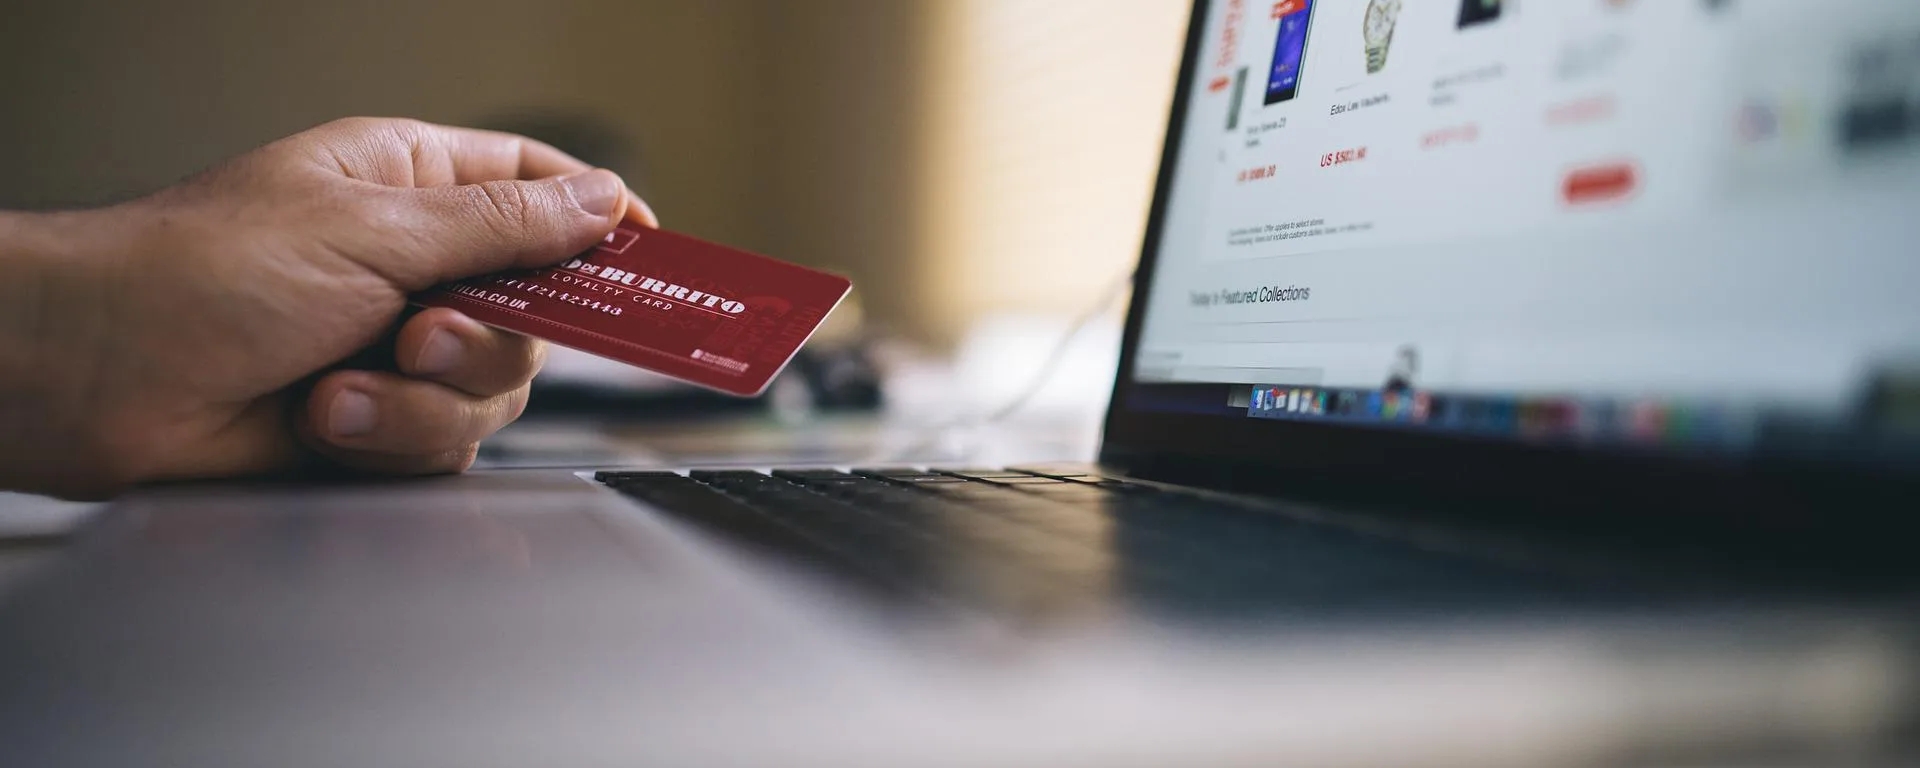 Persona usando su tarjeta de crédito para comprar algo en una tienda en línea.